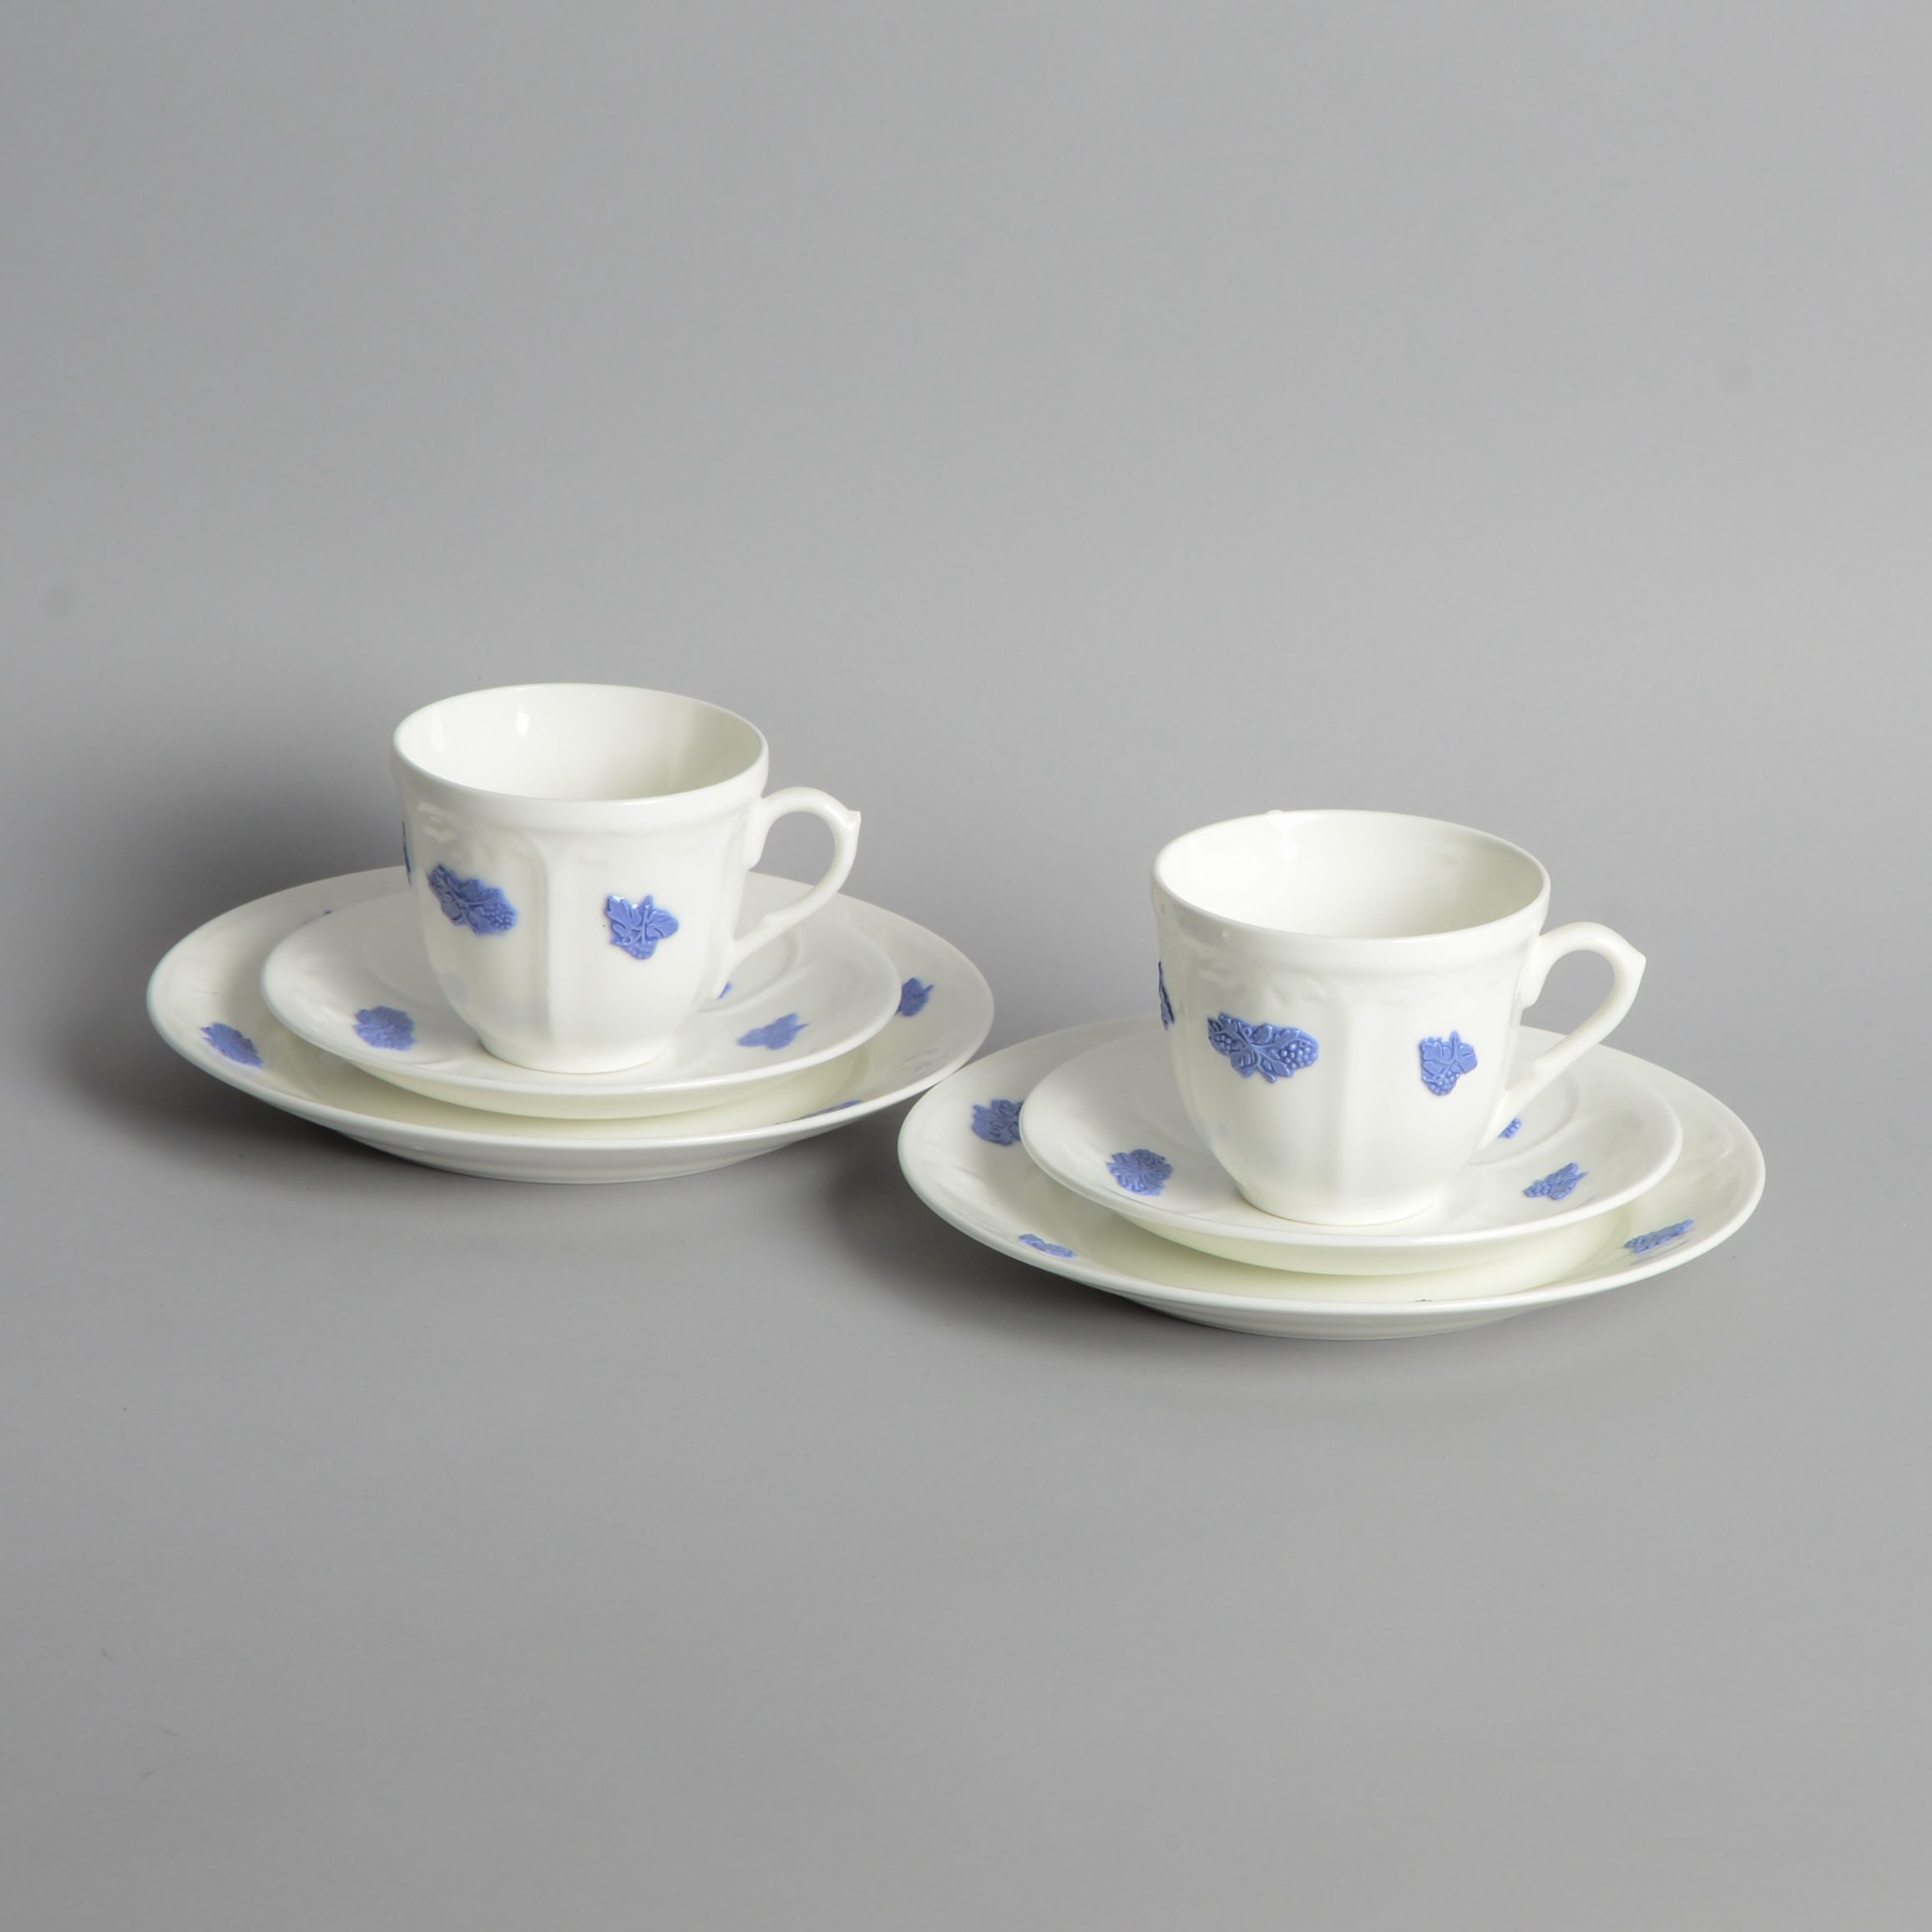 Gustavsberg – SÅLD ”Blå Blom” Kaffekoppar med Assiett 2 st